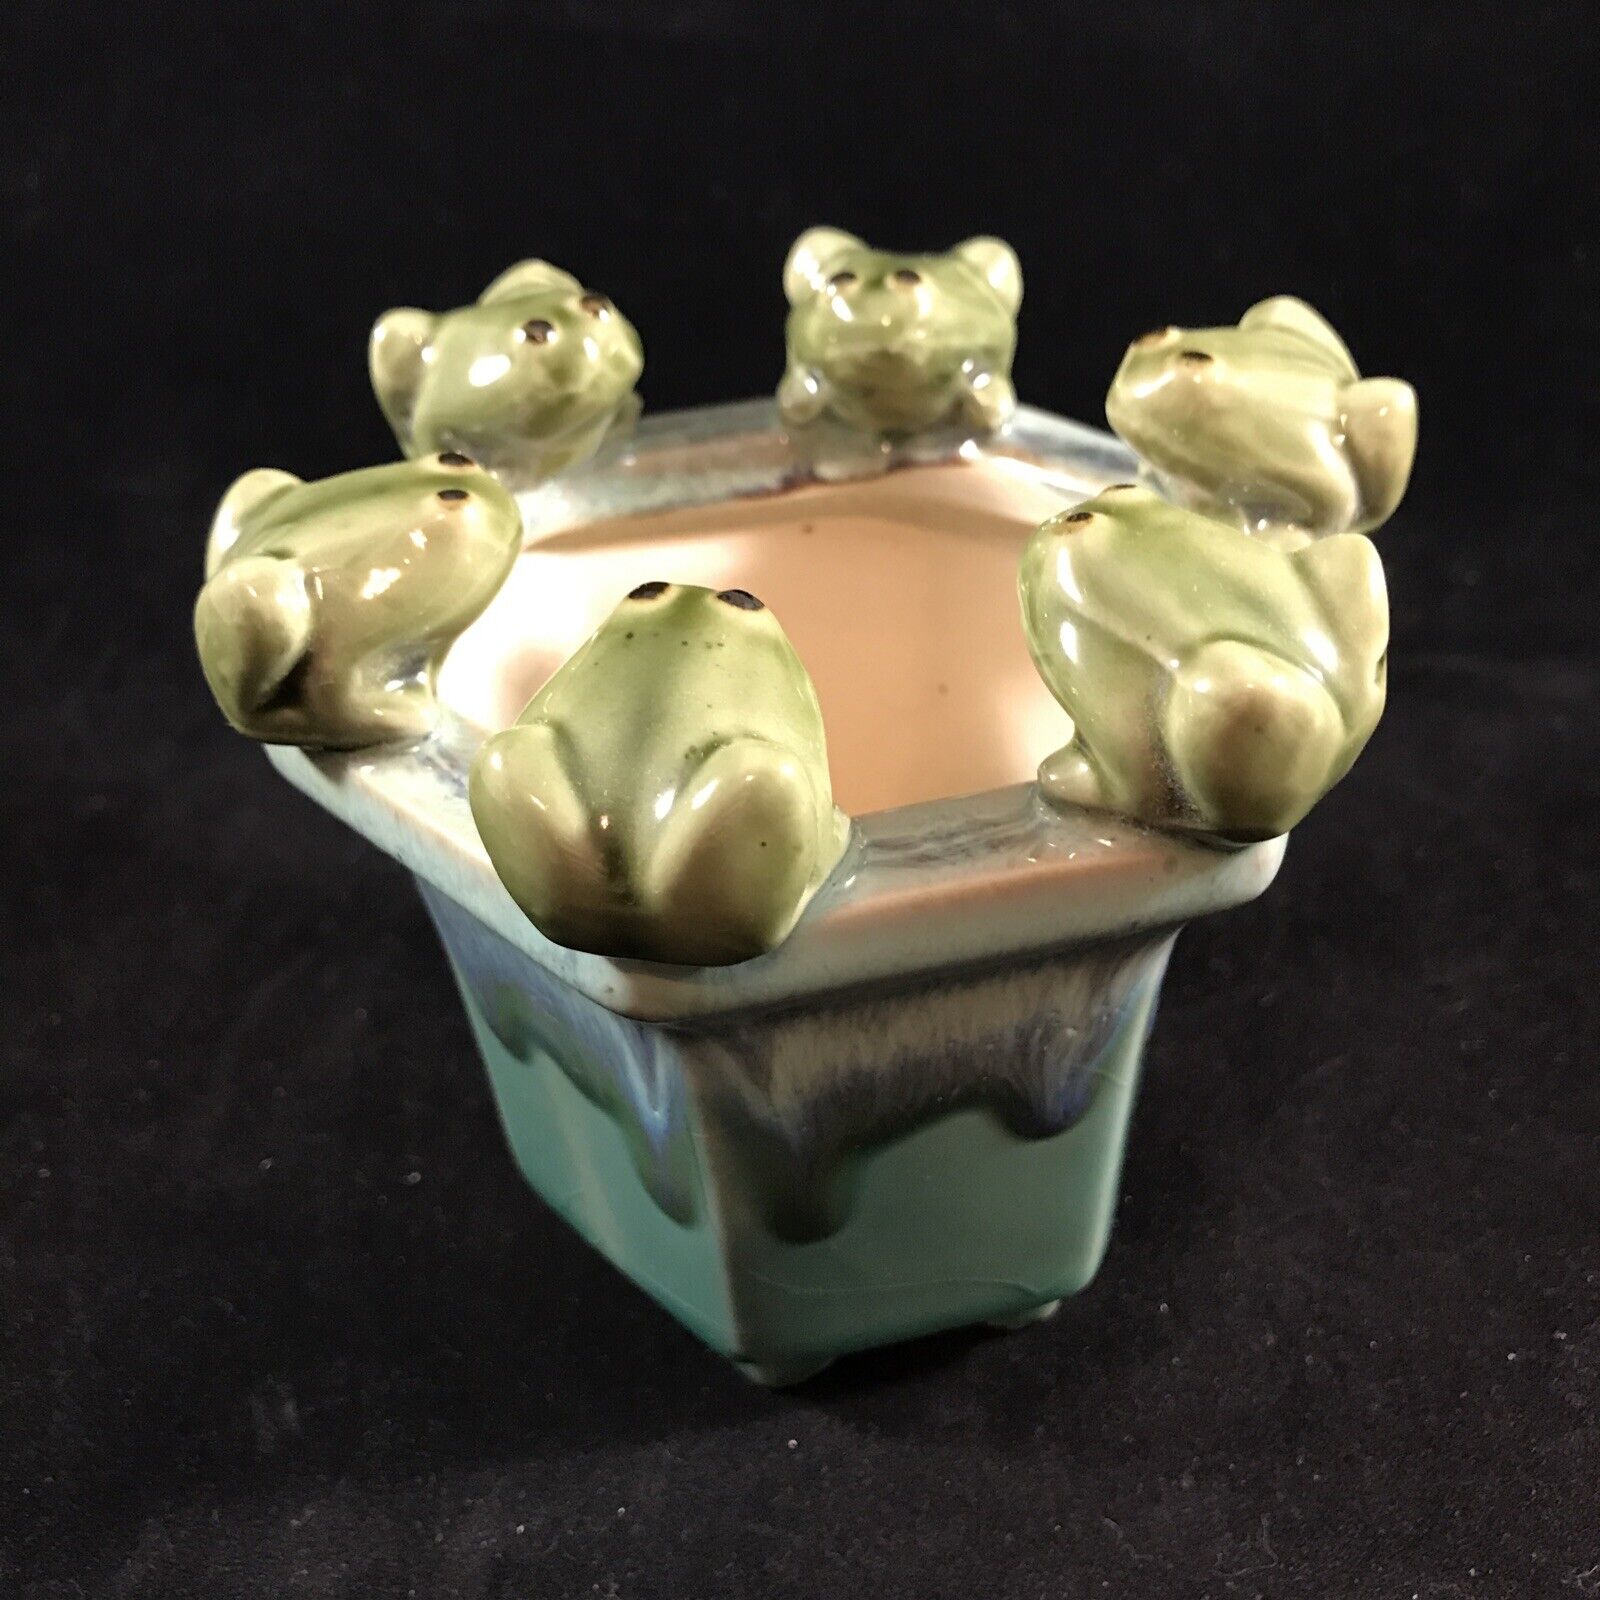 Hexagonal FROGS Planter Majolica Style Ceramic Six Sided Drip Glaze